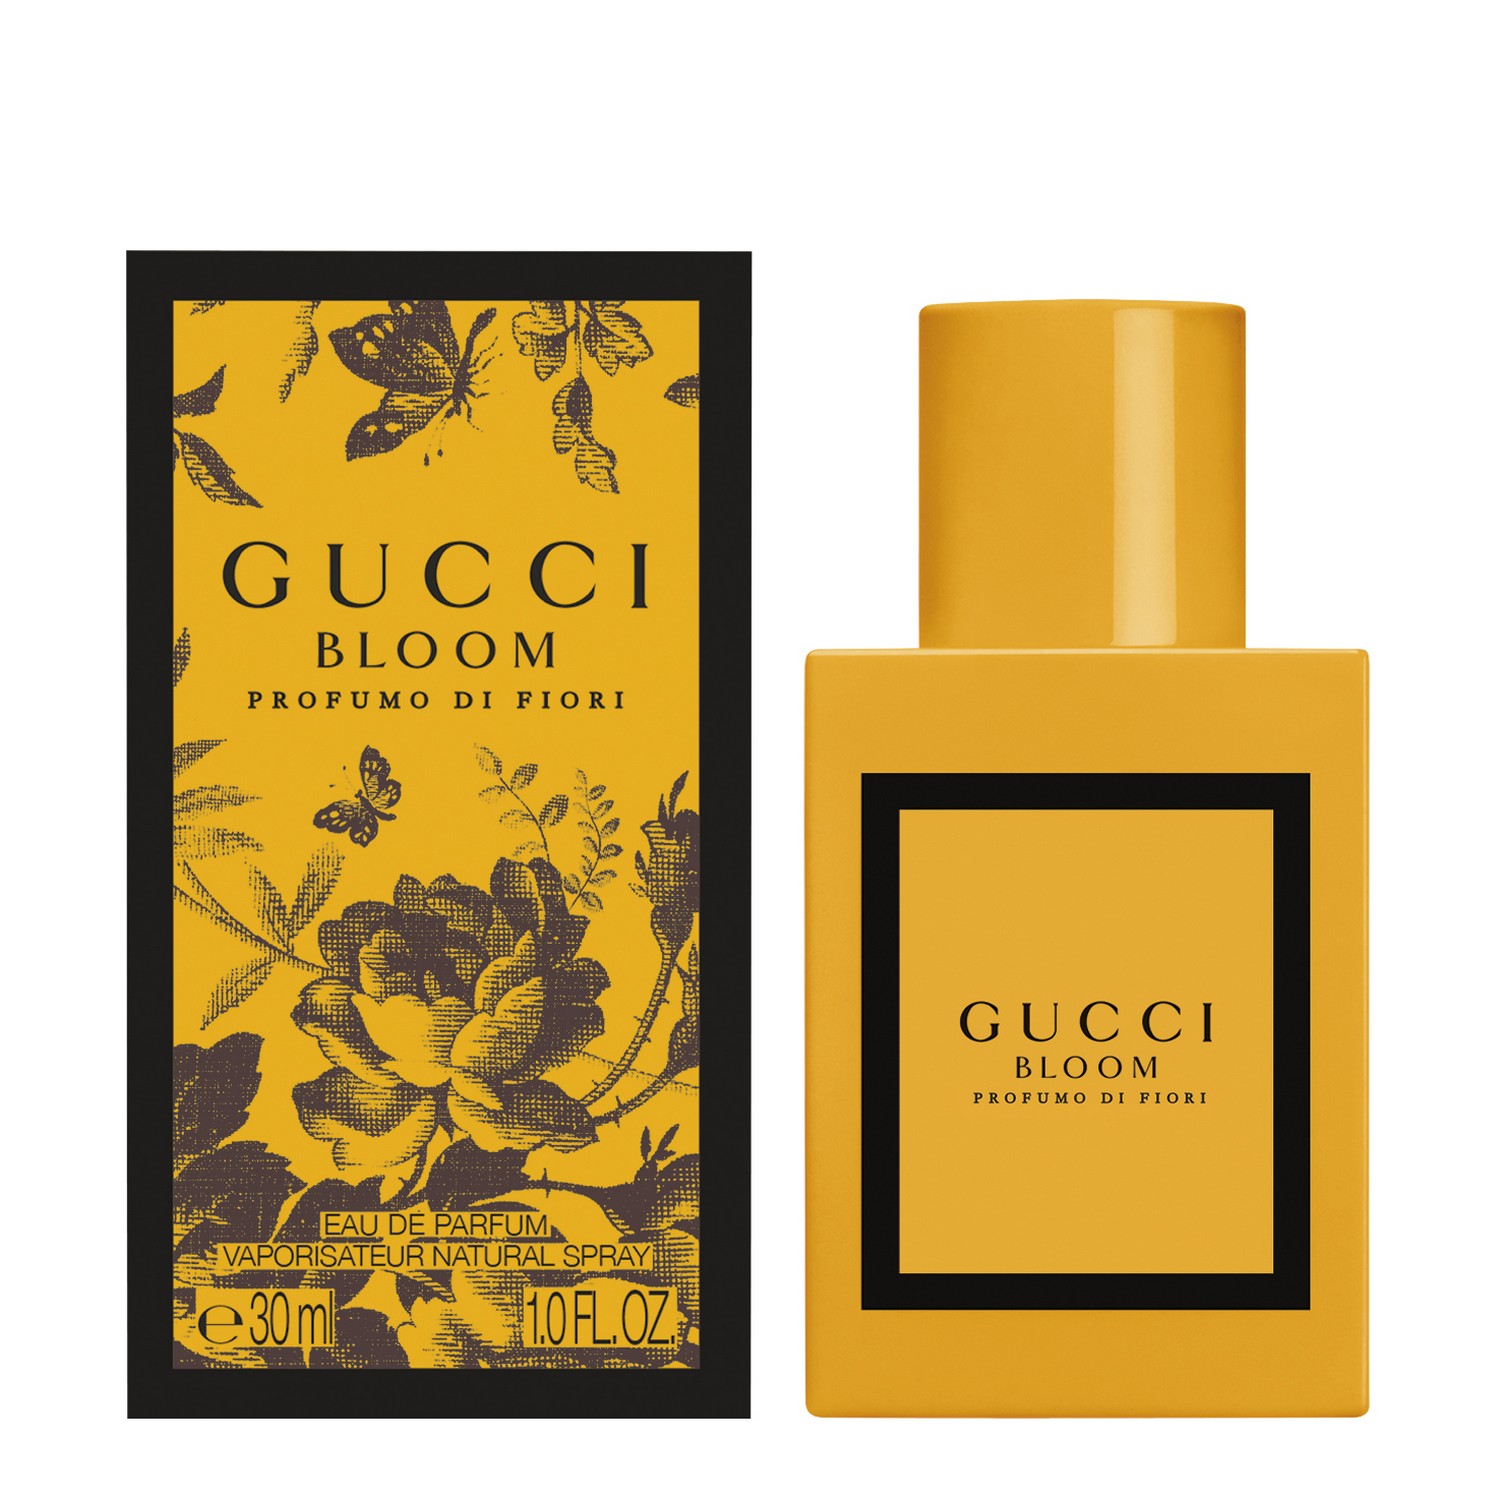 Gucci Bloom Profumo di Fiori Eau de Parfum 30ml